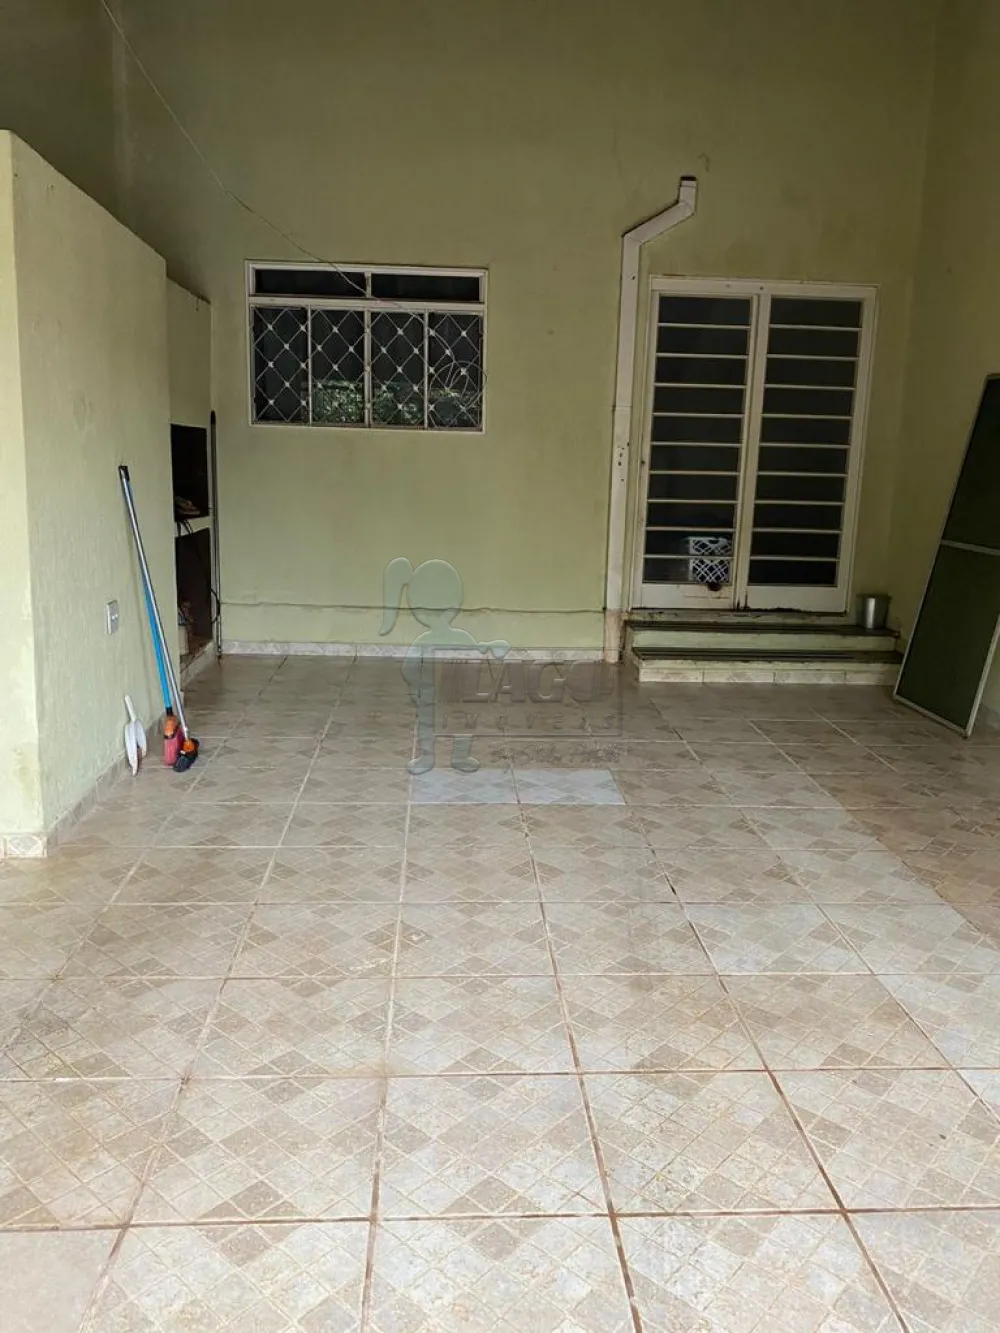 Comprar Casas / Padrão em Ribeirão Preto R$ 191.000,00 - Foto 2